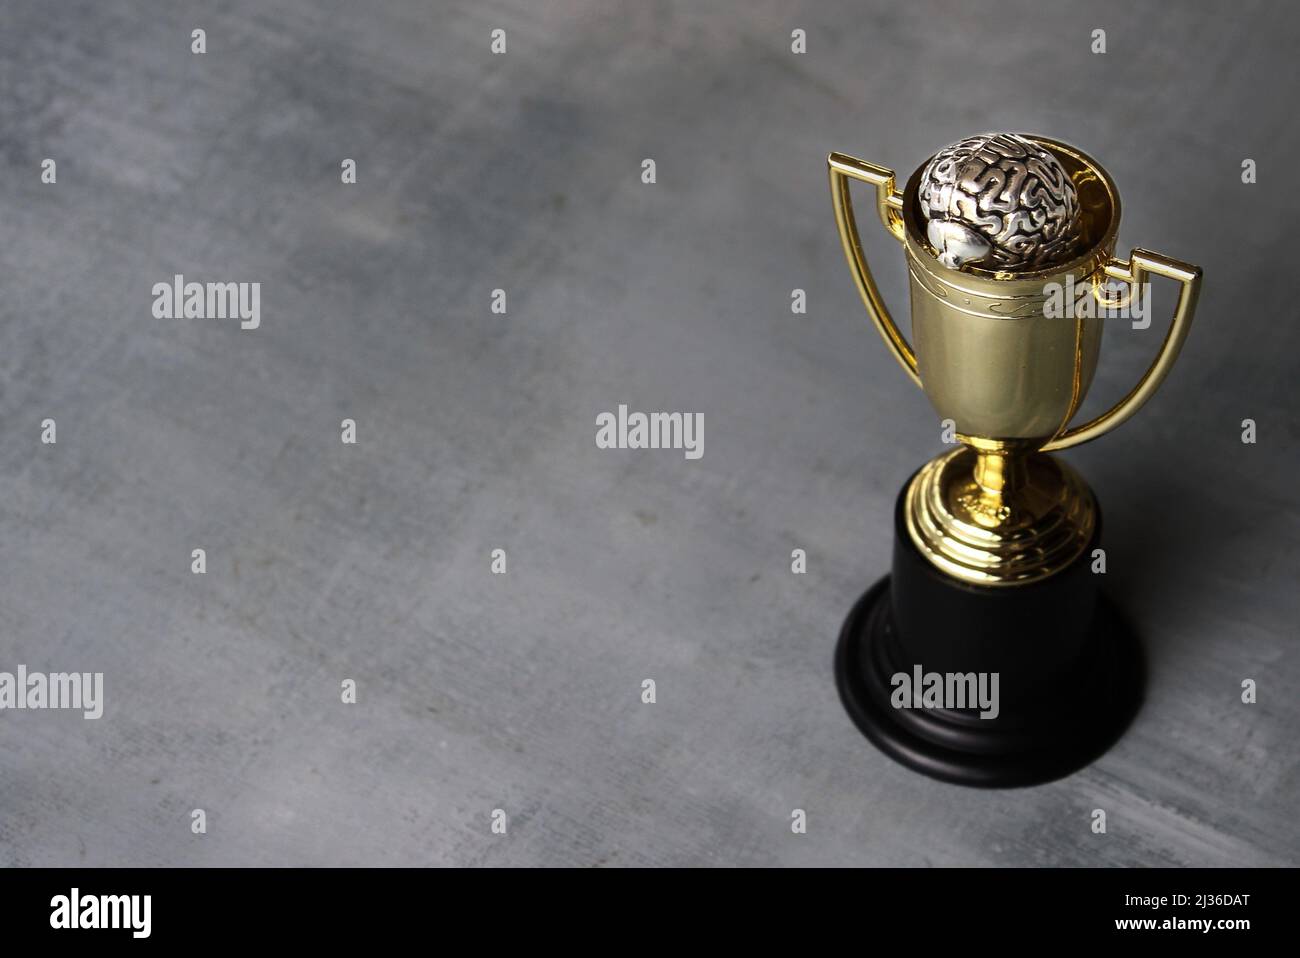 Gehirn in Gold Cup Trophäe mit Copy Space. Gewinnende Mentalität und Denkweise. Stockfoto